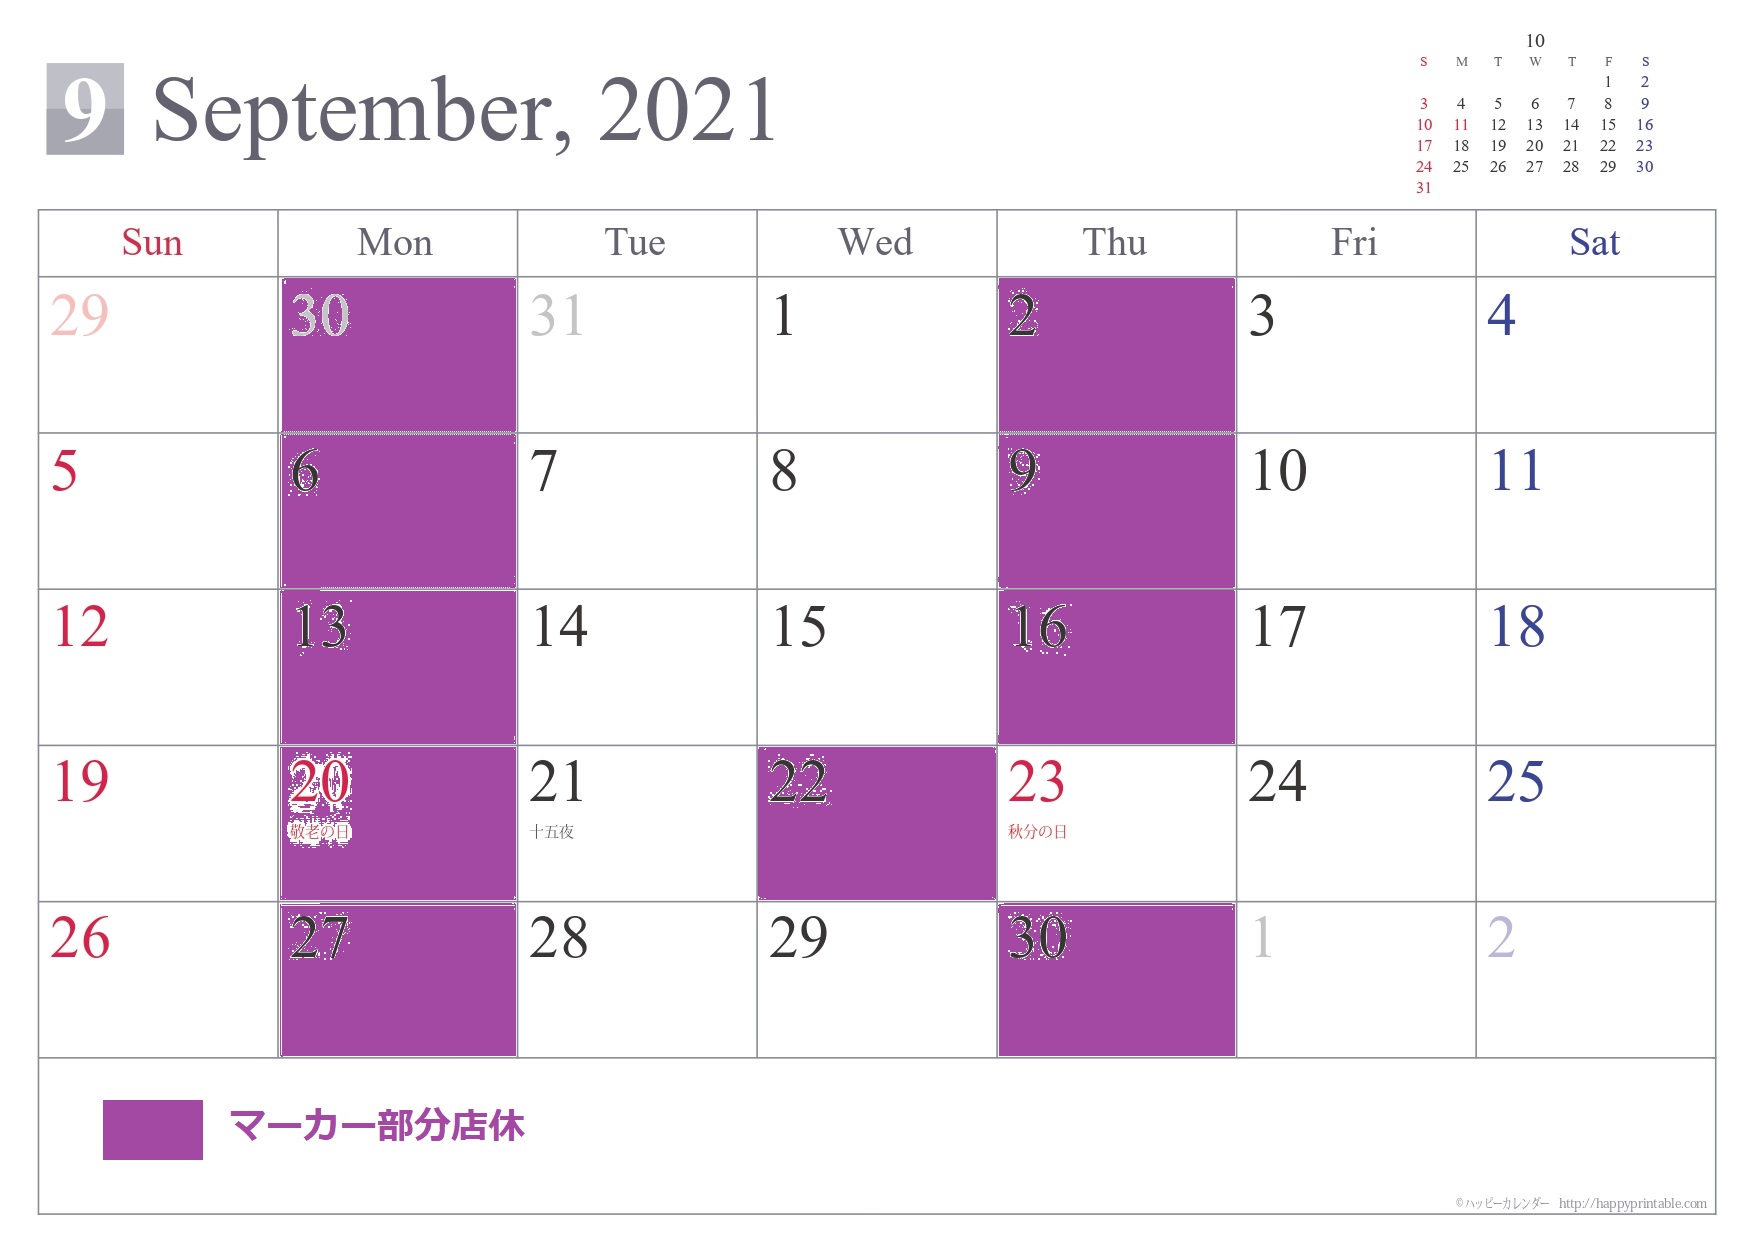 9月の店休カレンダーです